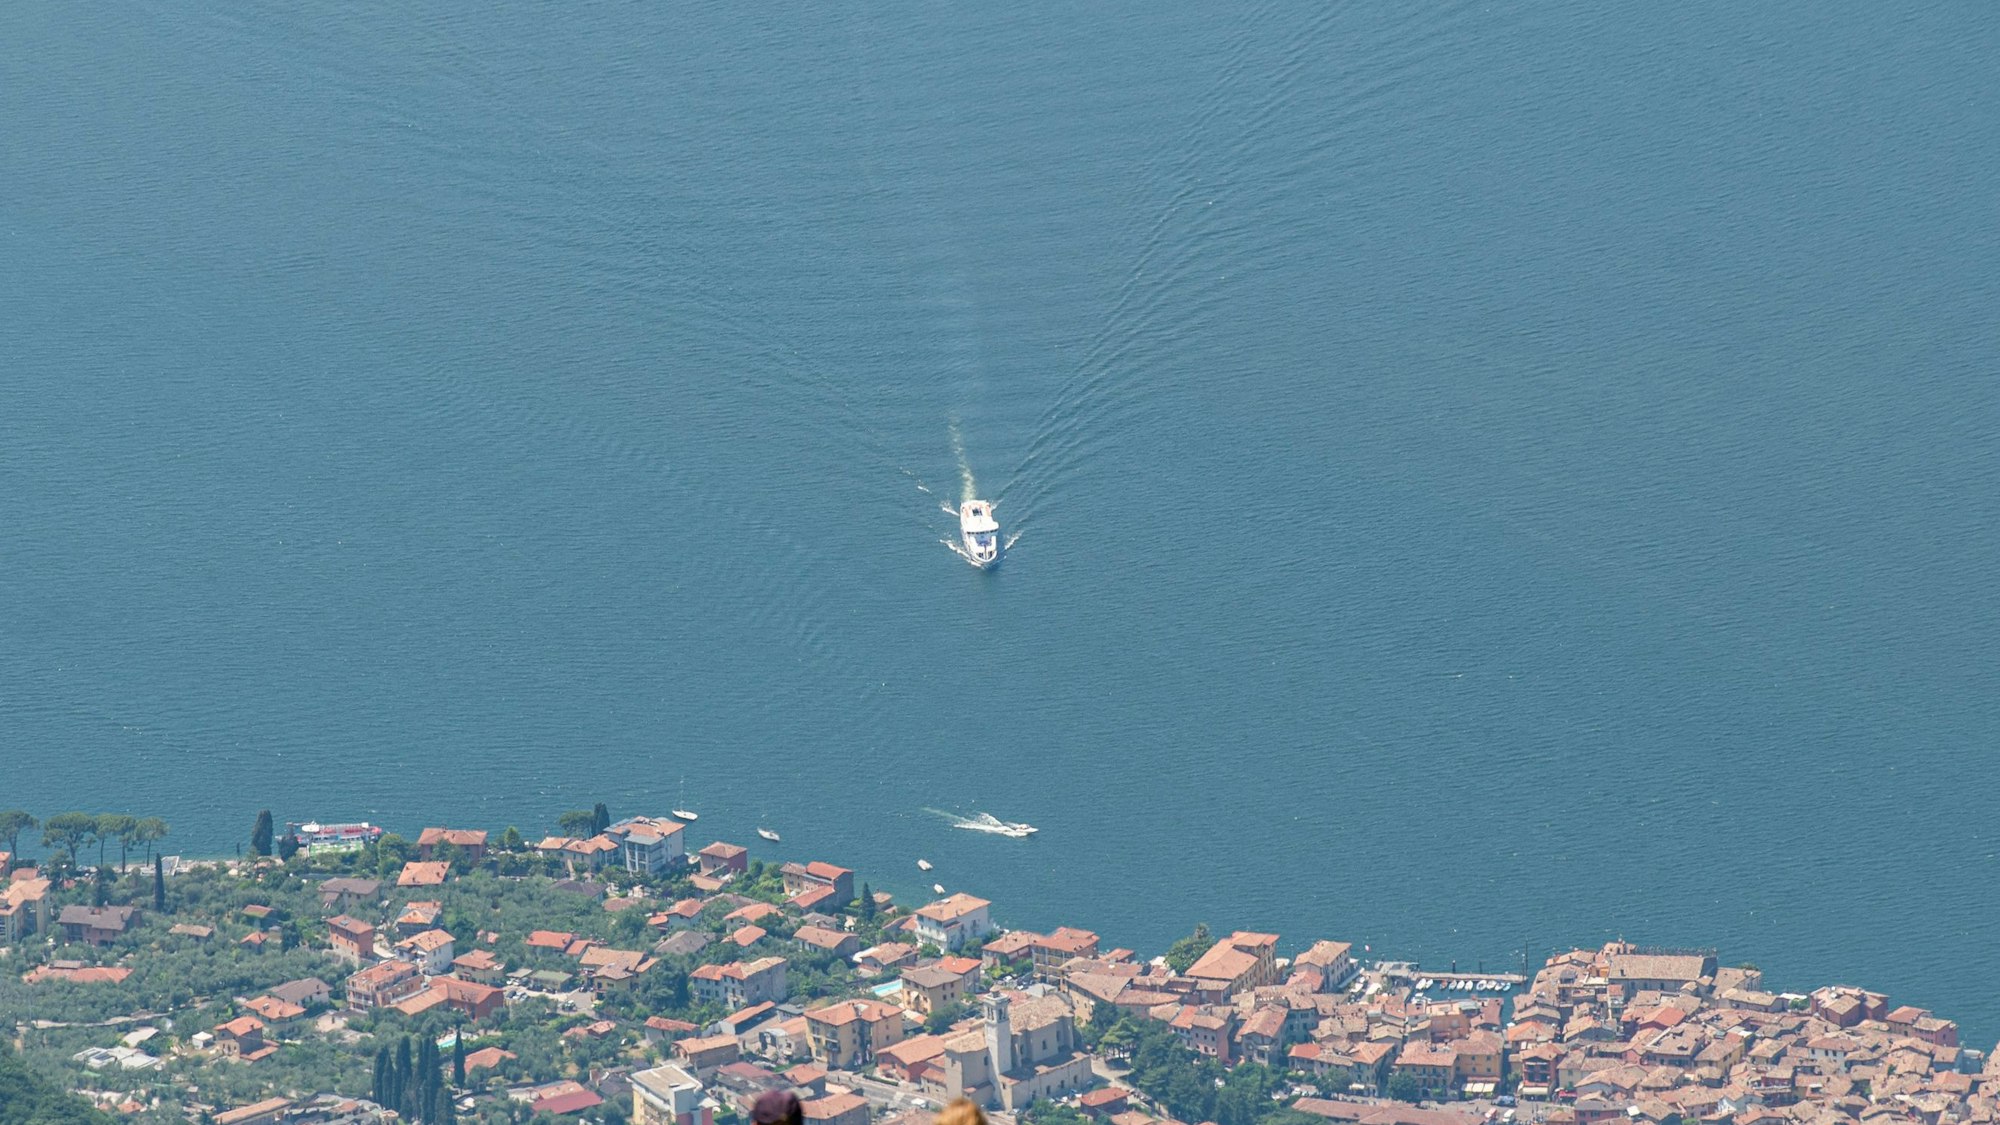 Blick vom Berg Monte Baldo auf den Gardasee und den Ort Malcesine. Auf dem See ist ein weißes Boot unterwegs.